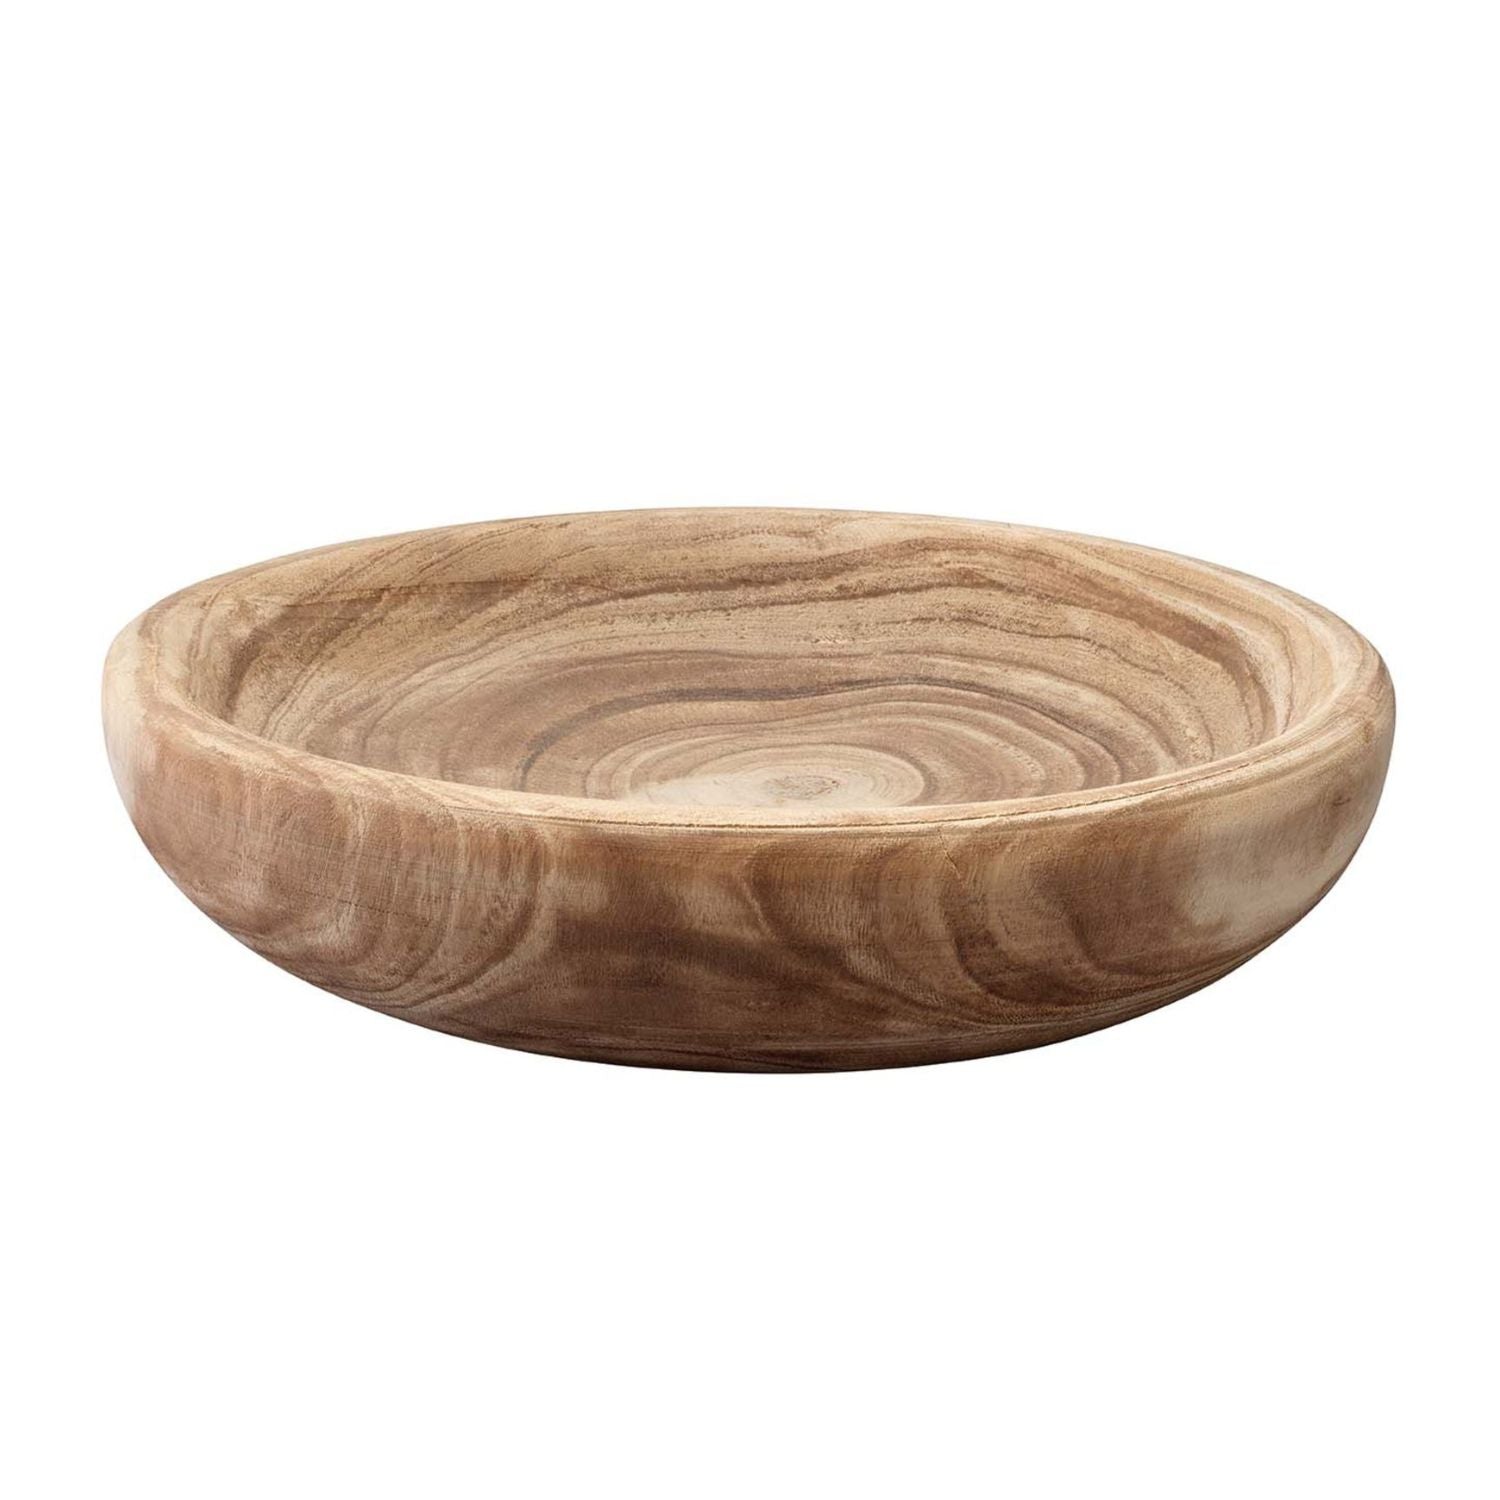 Laurel Wooden Decorative Bowl, Small